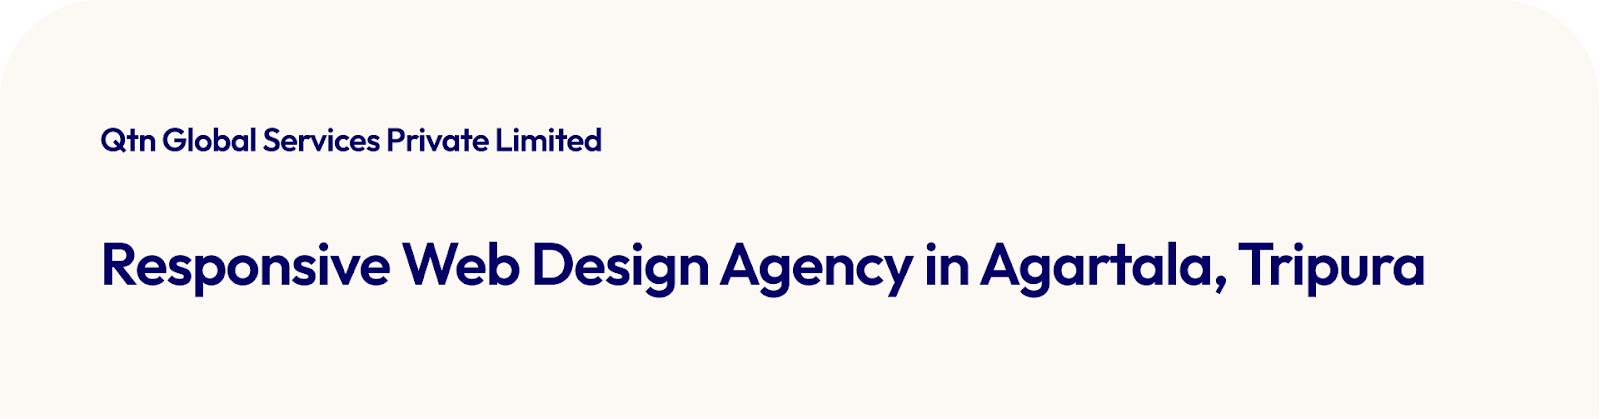 Responsive Web Design Agency in Agartala, Tripura 